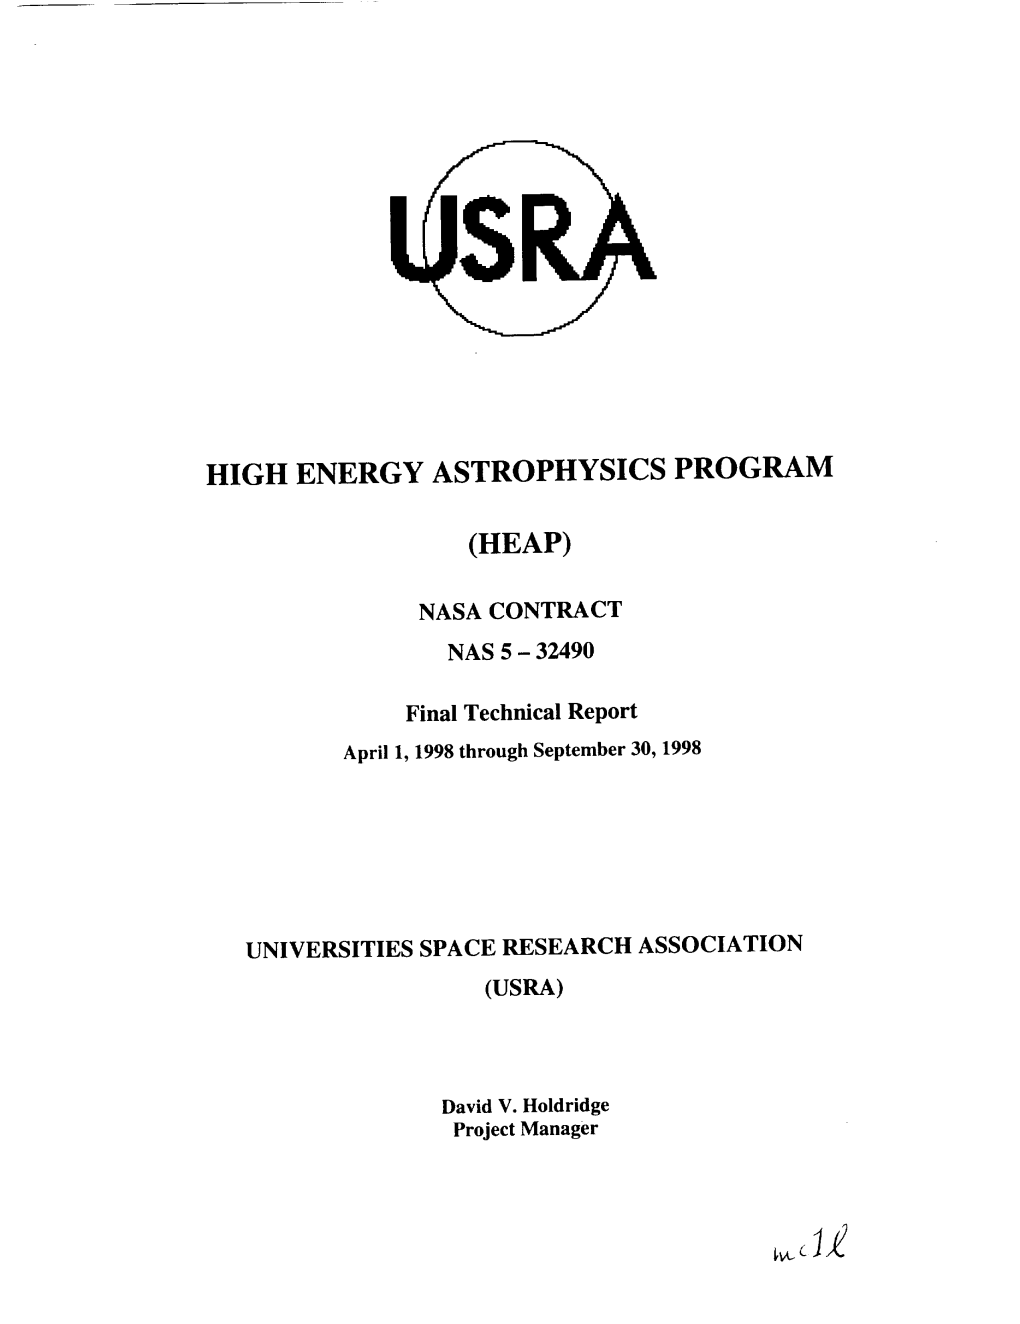 High Energy Astrophysics Program (Heap)